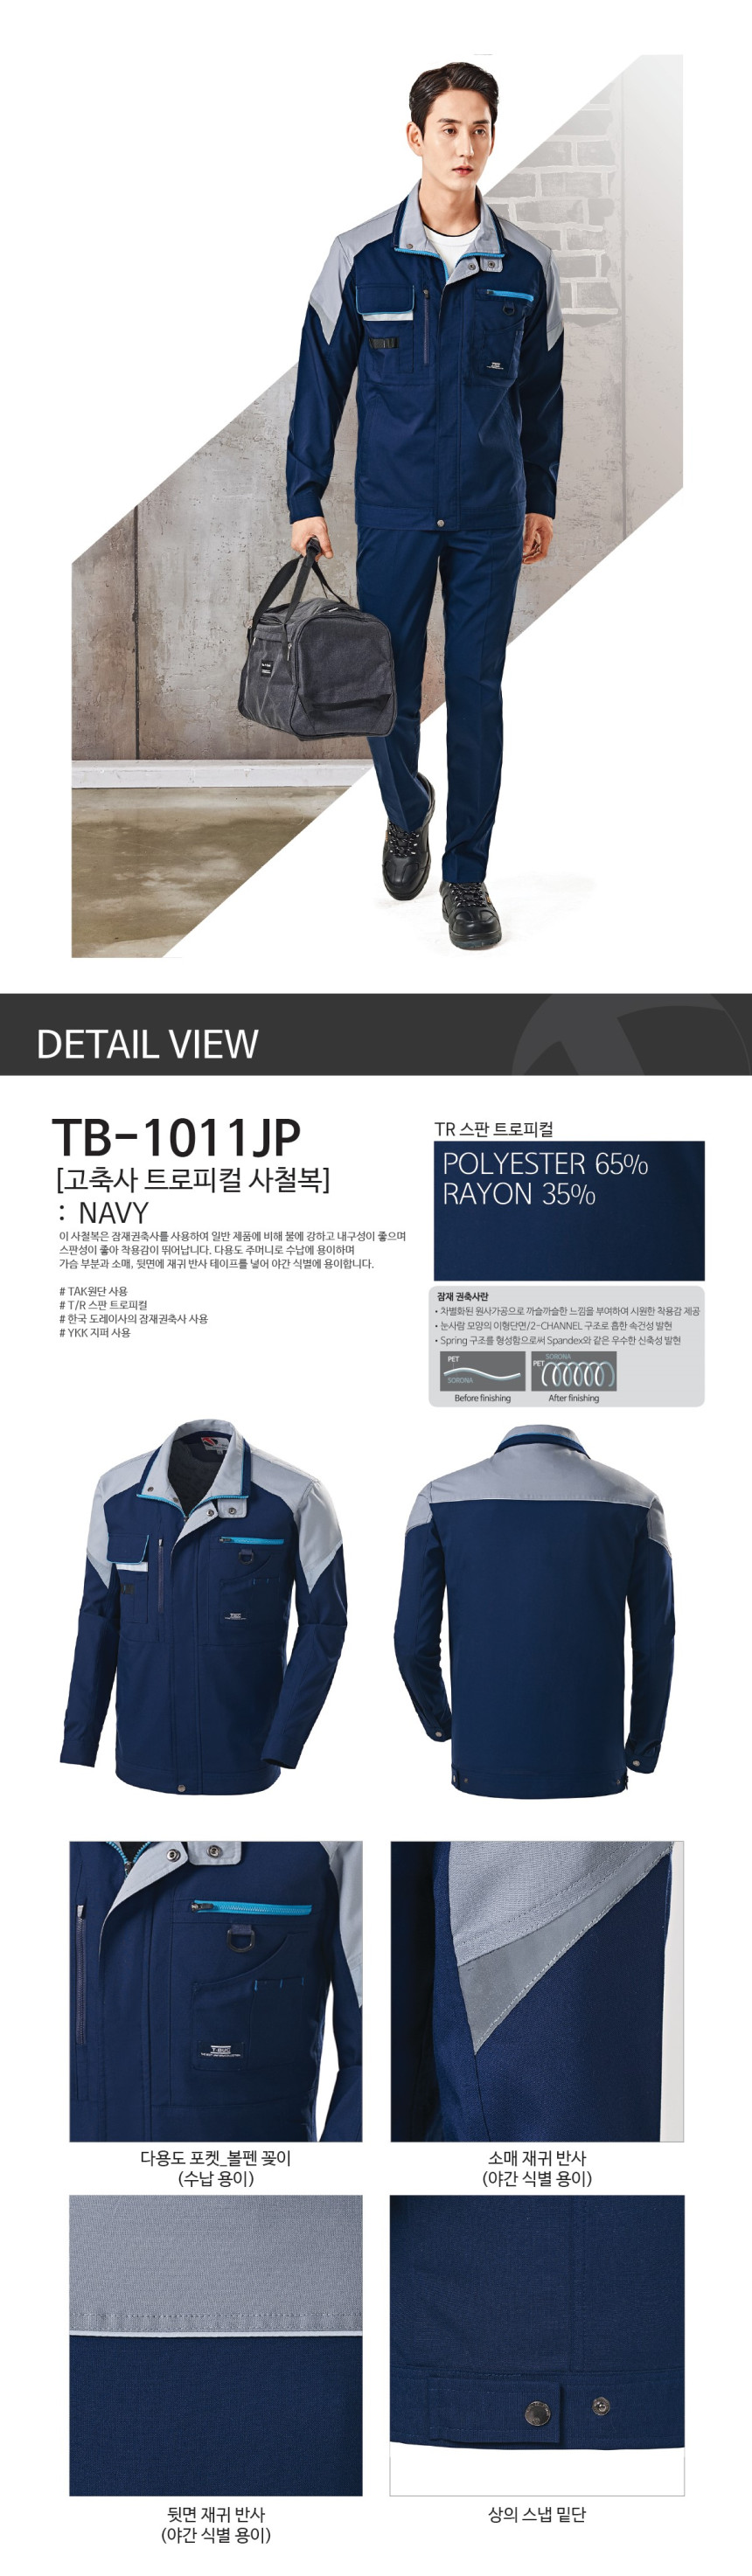 TB-1011JP_1.jpg